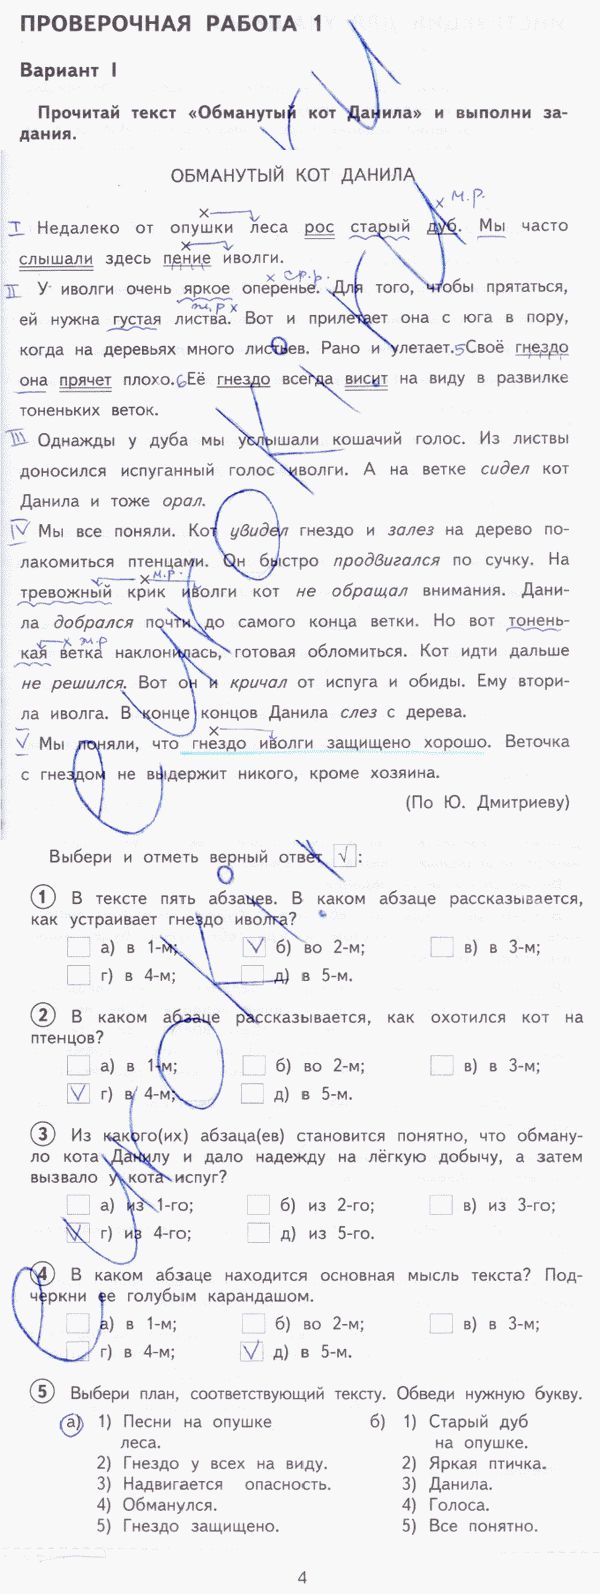 Тетрадь для проверочных работ по русскому языку 3 класс. ФГОС Лаврова Страница 4